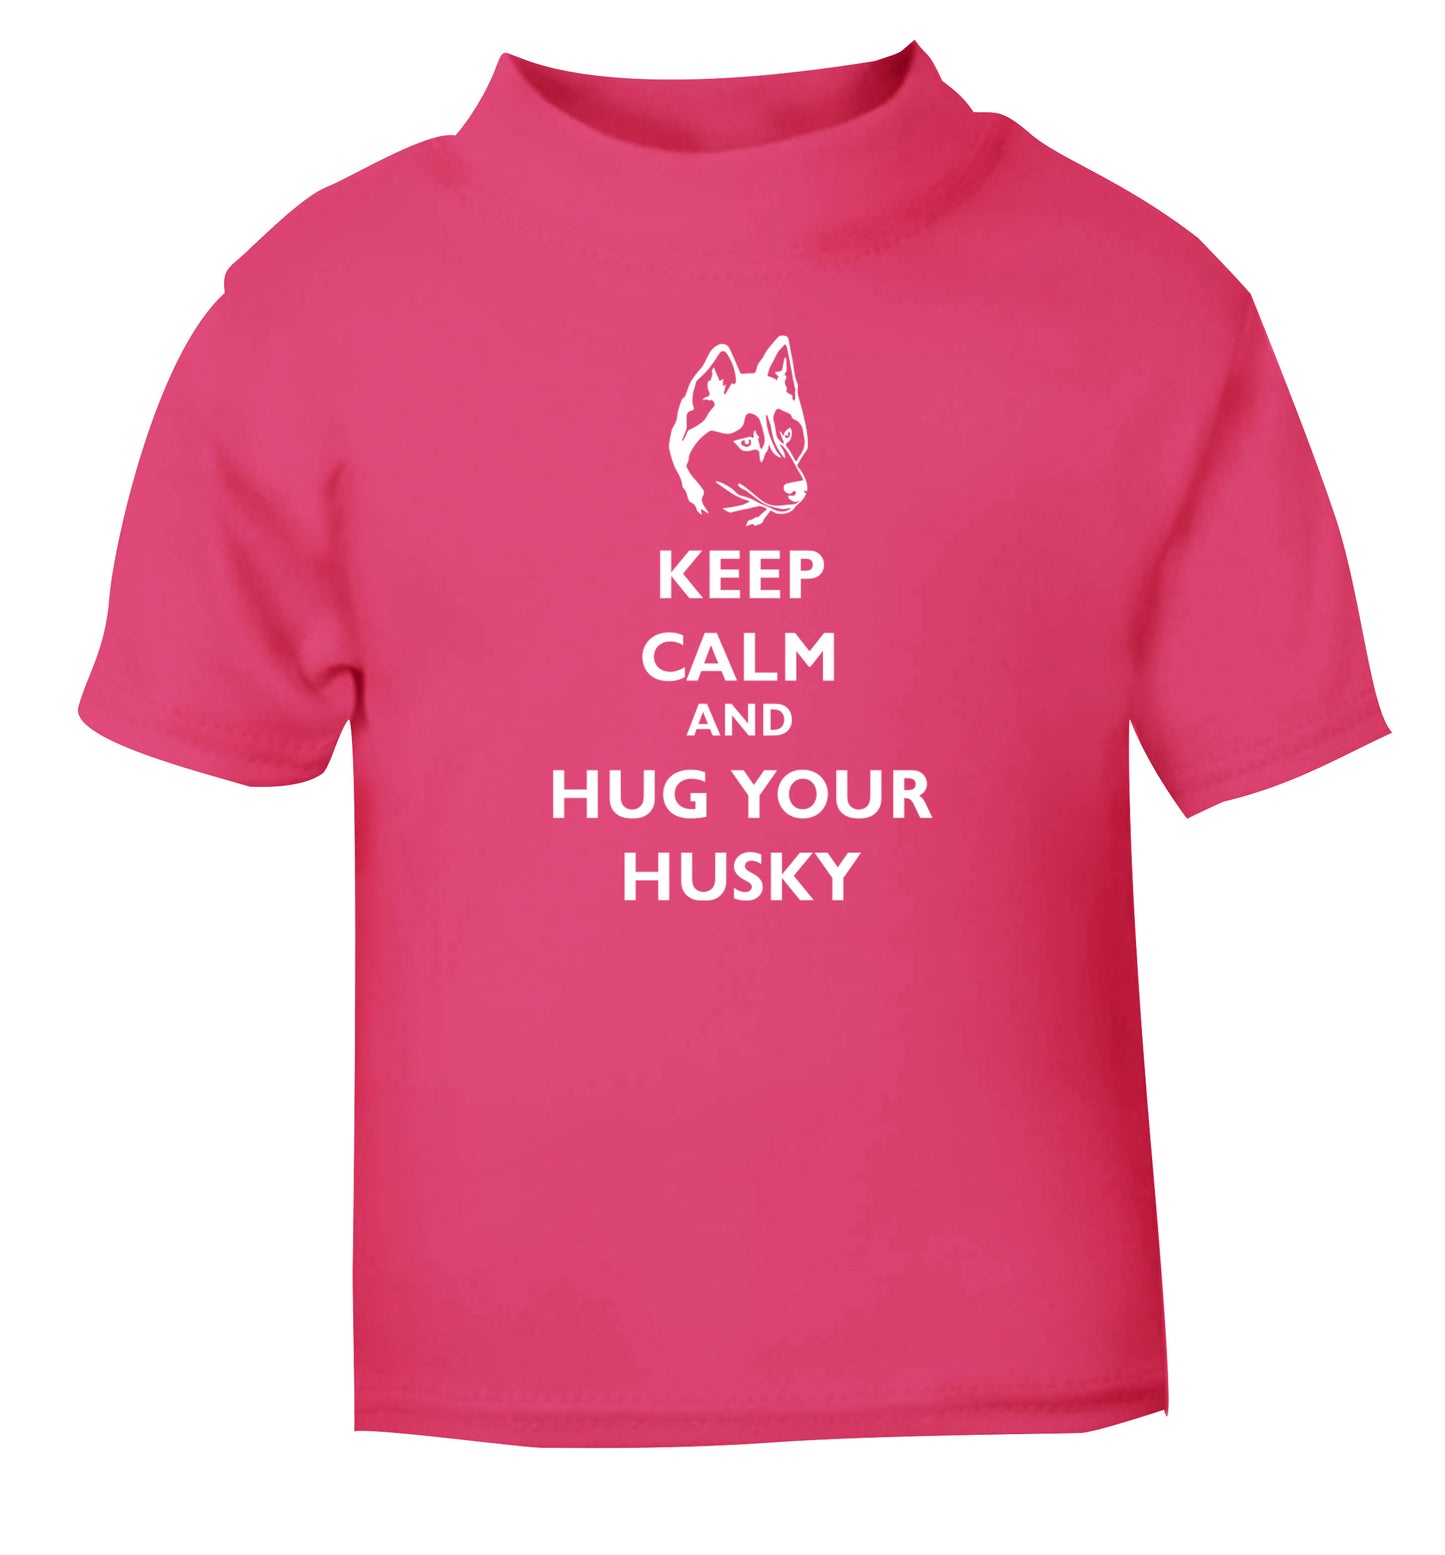 Keep calm and hug your husky pink Baby Toddler Tshirt 2 Years